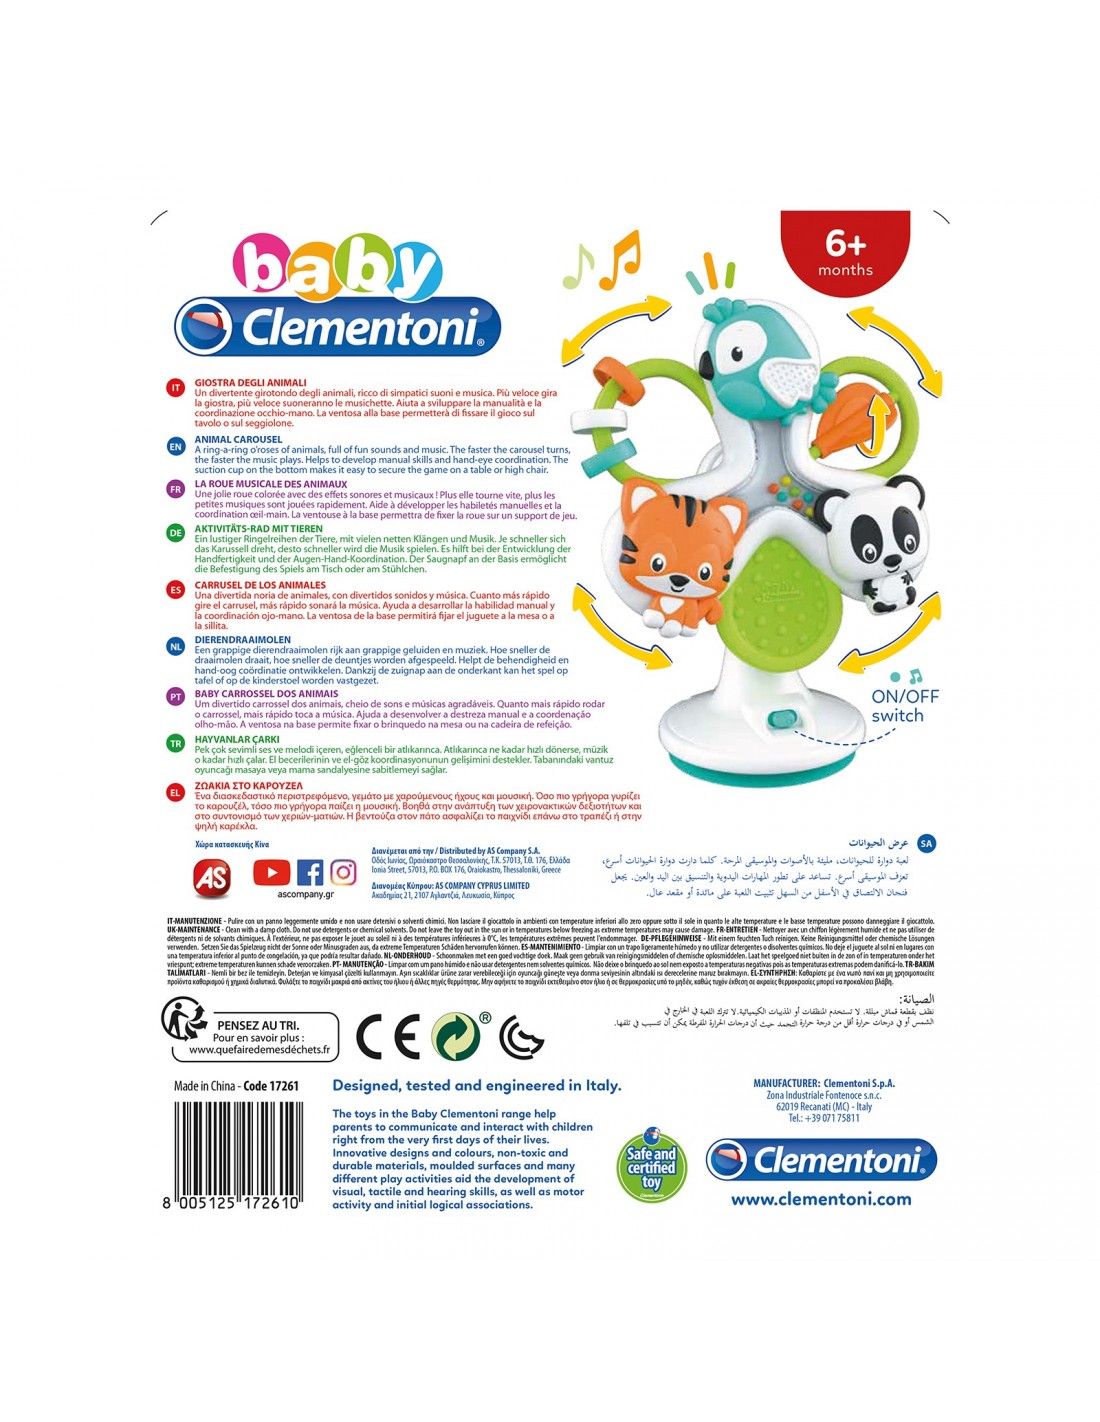 Baby Clementoni Ζωάκια Στο Καρουζέλ 1000-17261 - Baby Clementoni